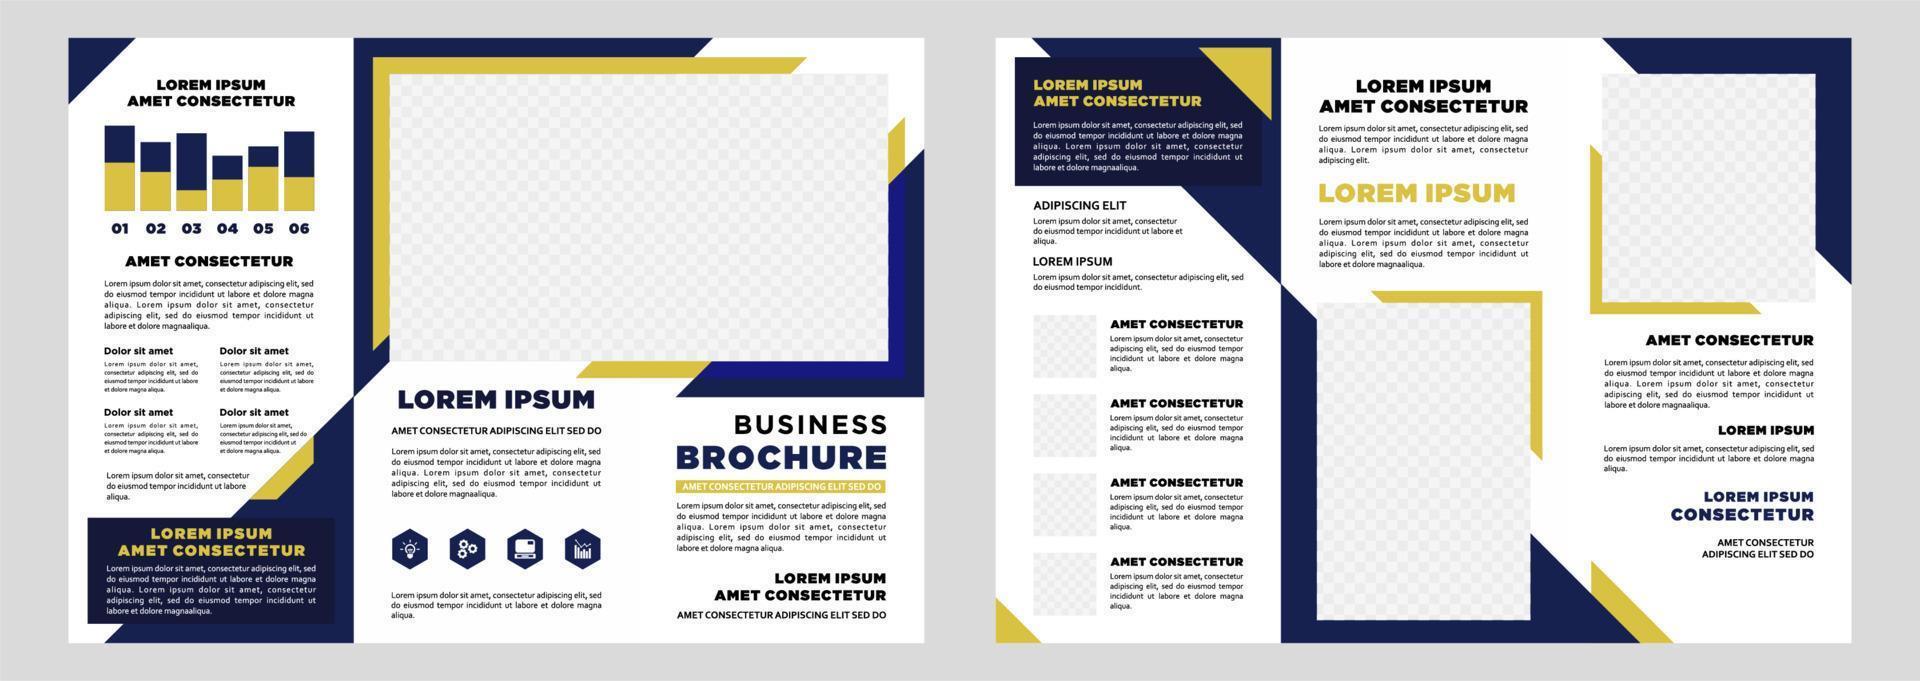 plantilla de folleto tríptico de marketing digital empresarial minimalista vector